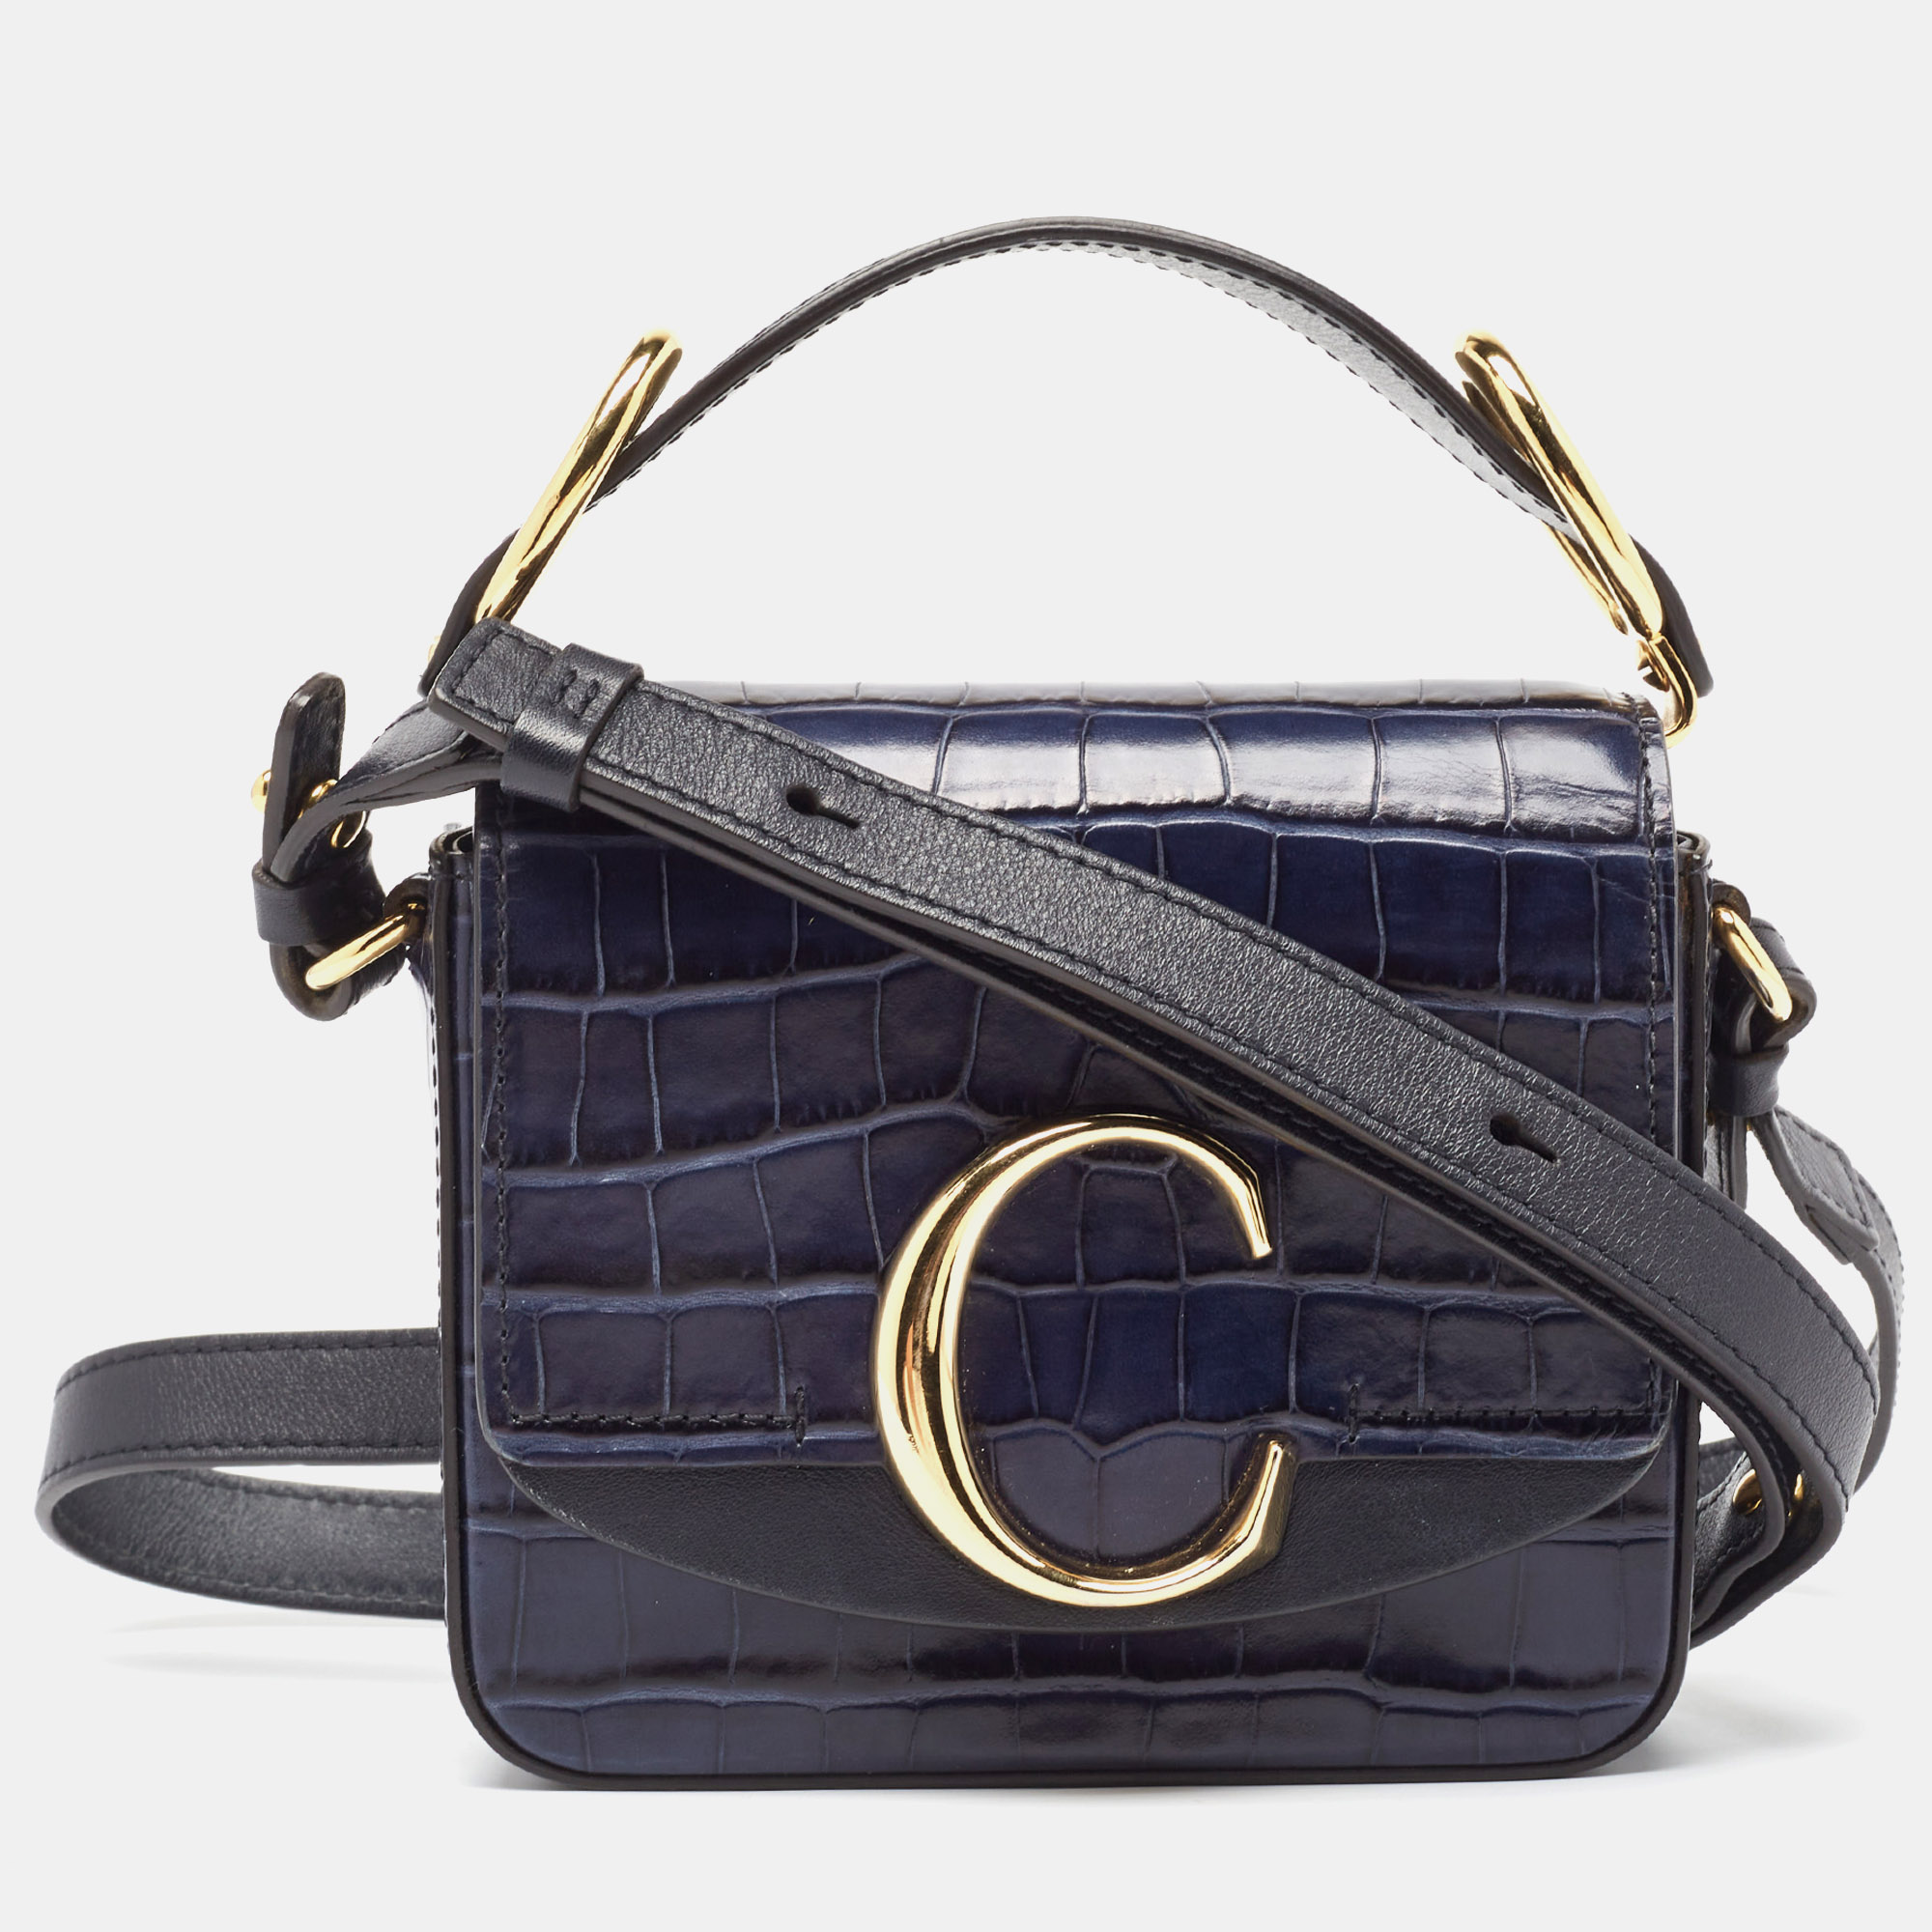 Chloe navy blue croc embossed leather mini c top handle bag